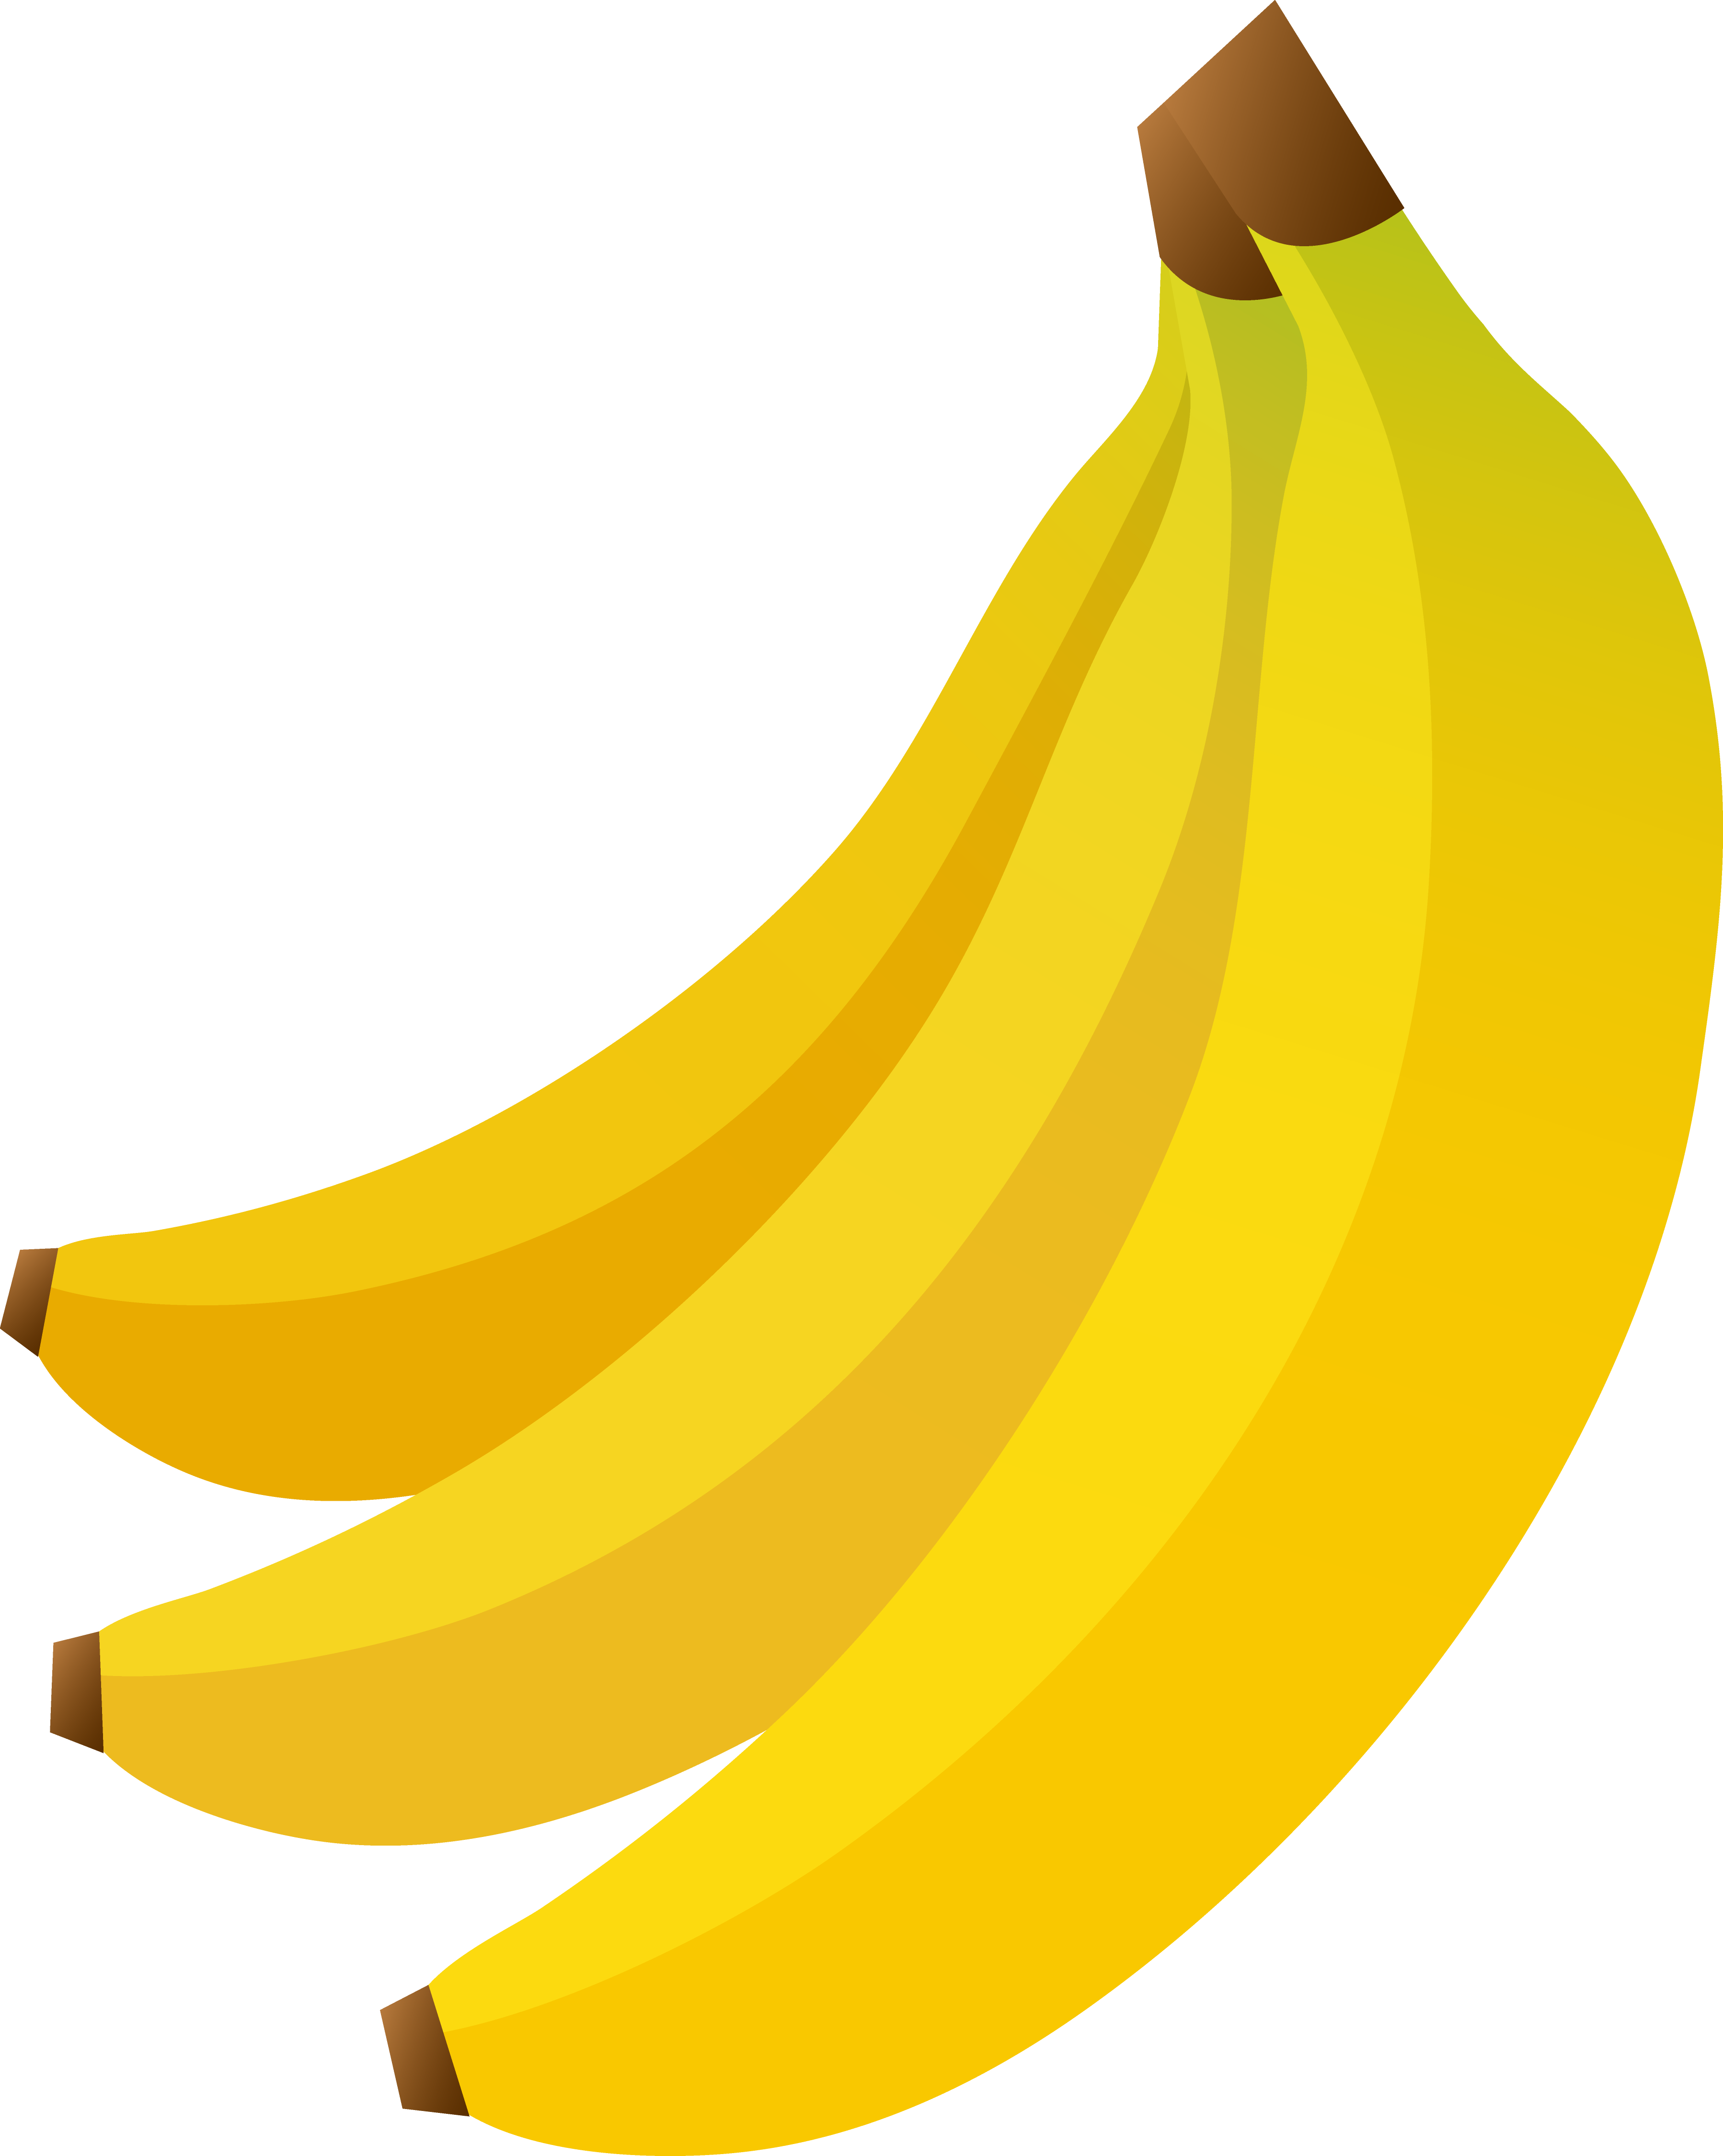 Clip Art Illustration Of A Cartoon Banana Clip Art Illustration By 